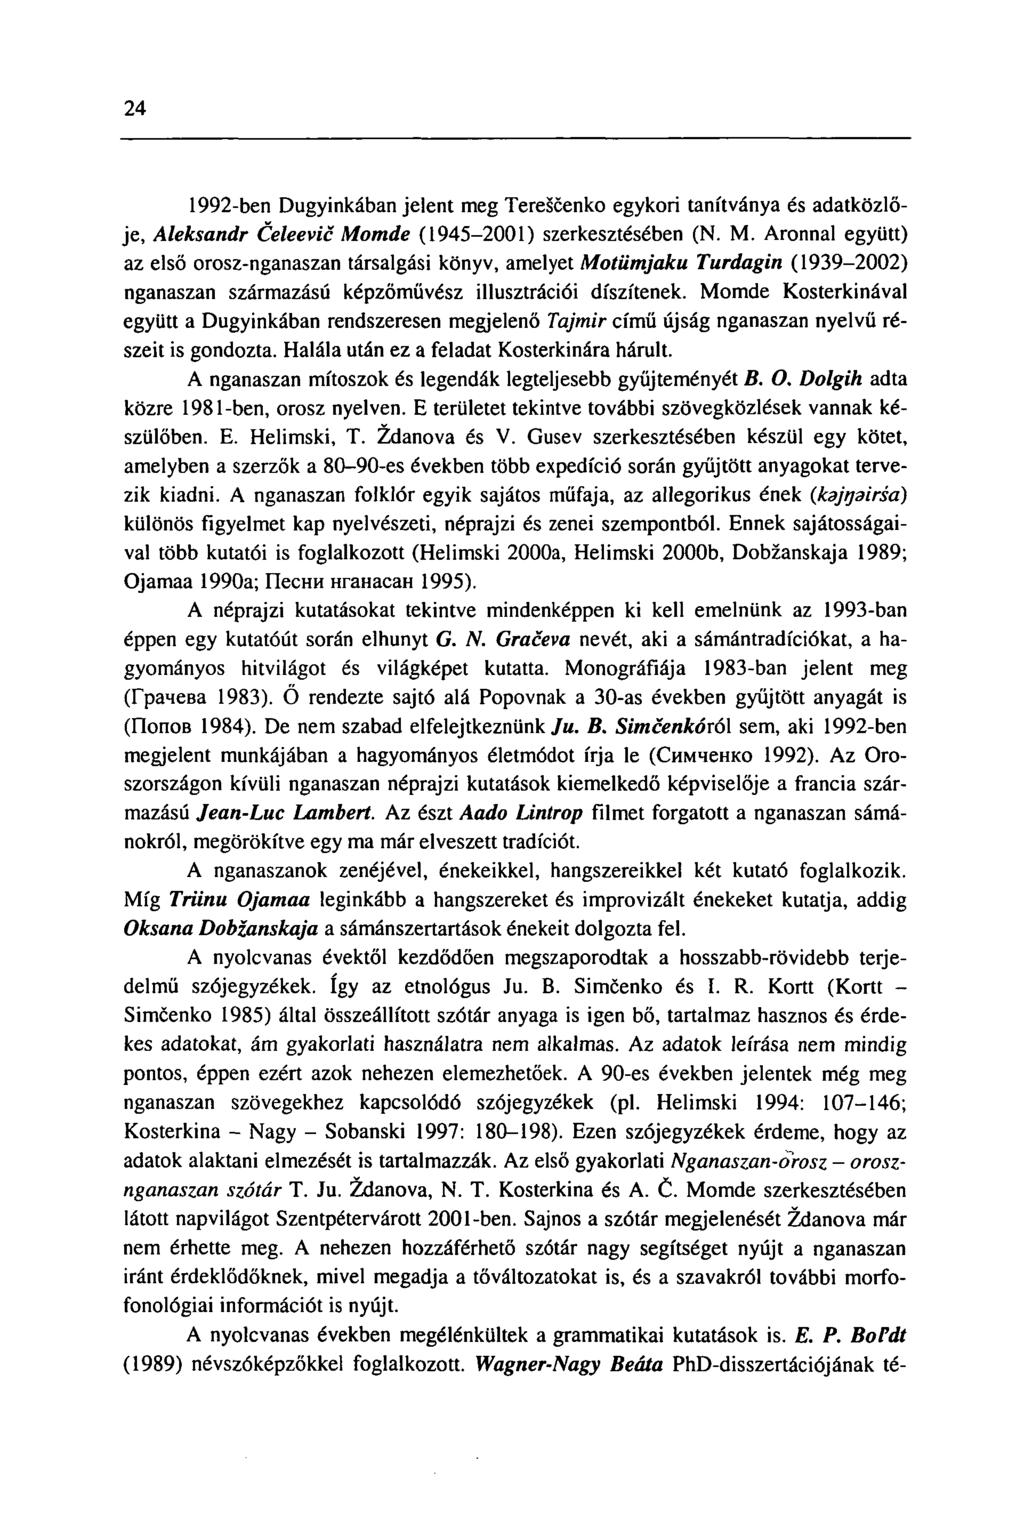 24 1992-ben Dugyinkában jelent meg Terescenko egykori tanítványa és adatközlője, Aleksandr Celeevic Mo